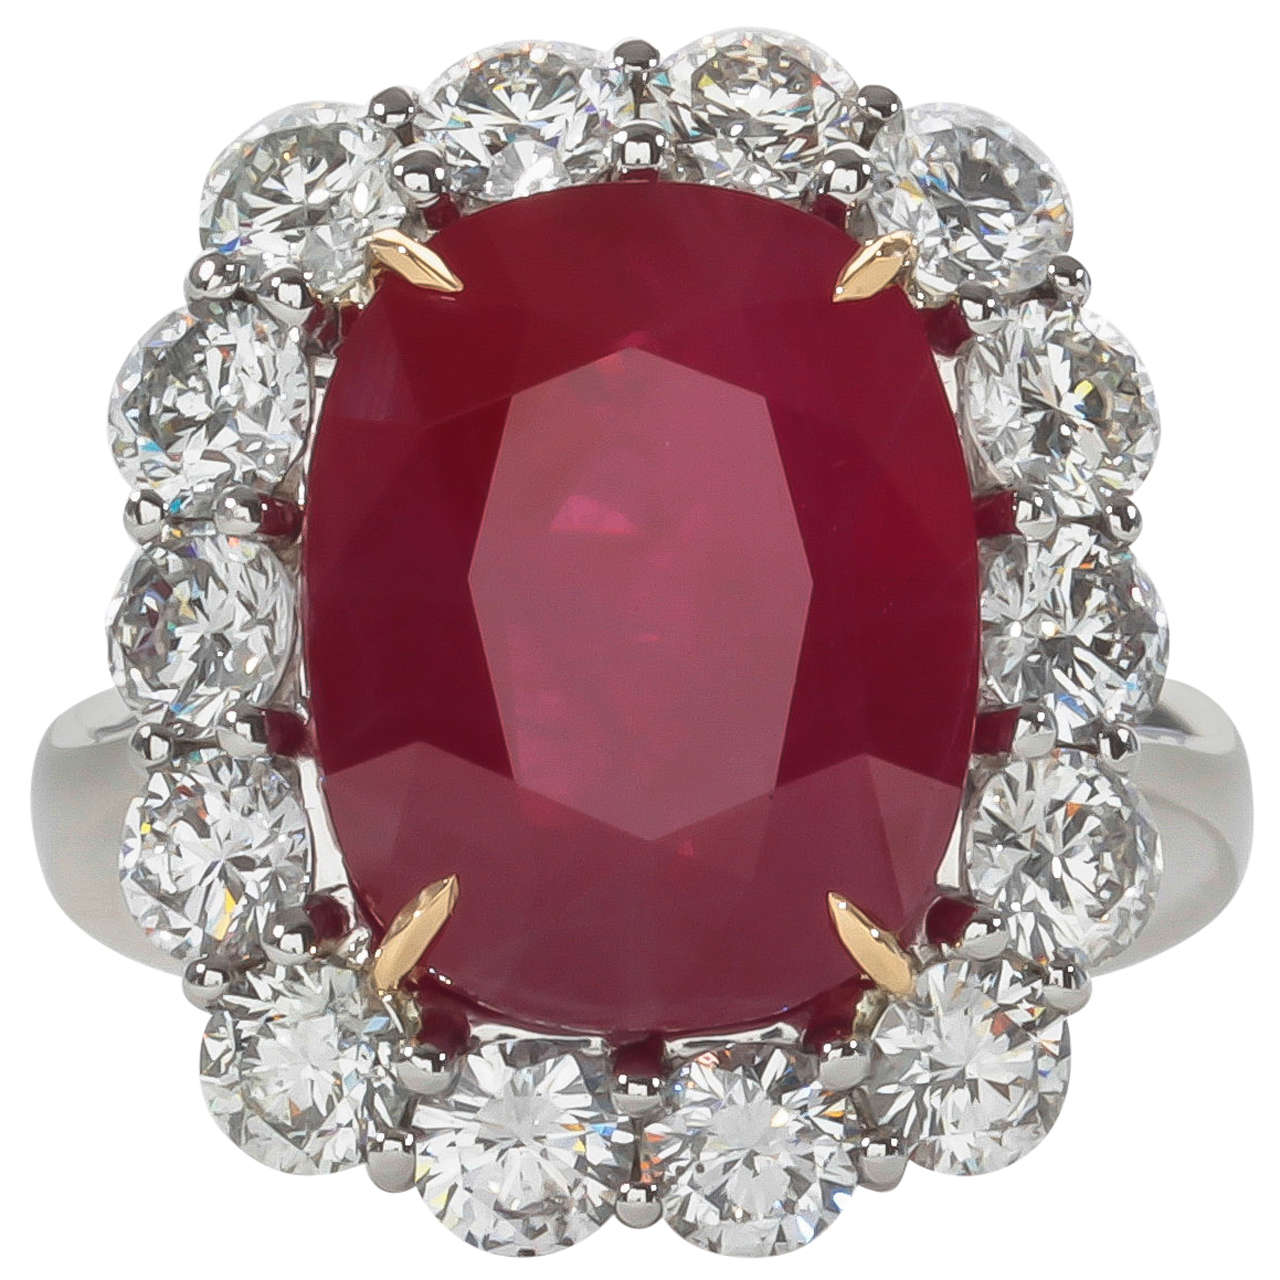 Rare 10 Carat Burma Ruby Diamond Ring